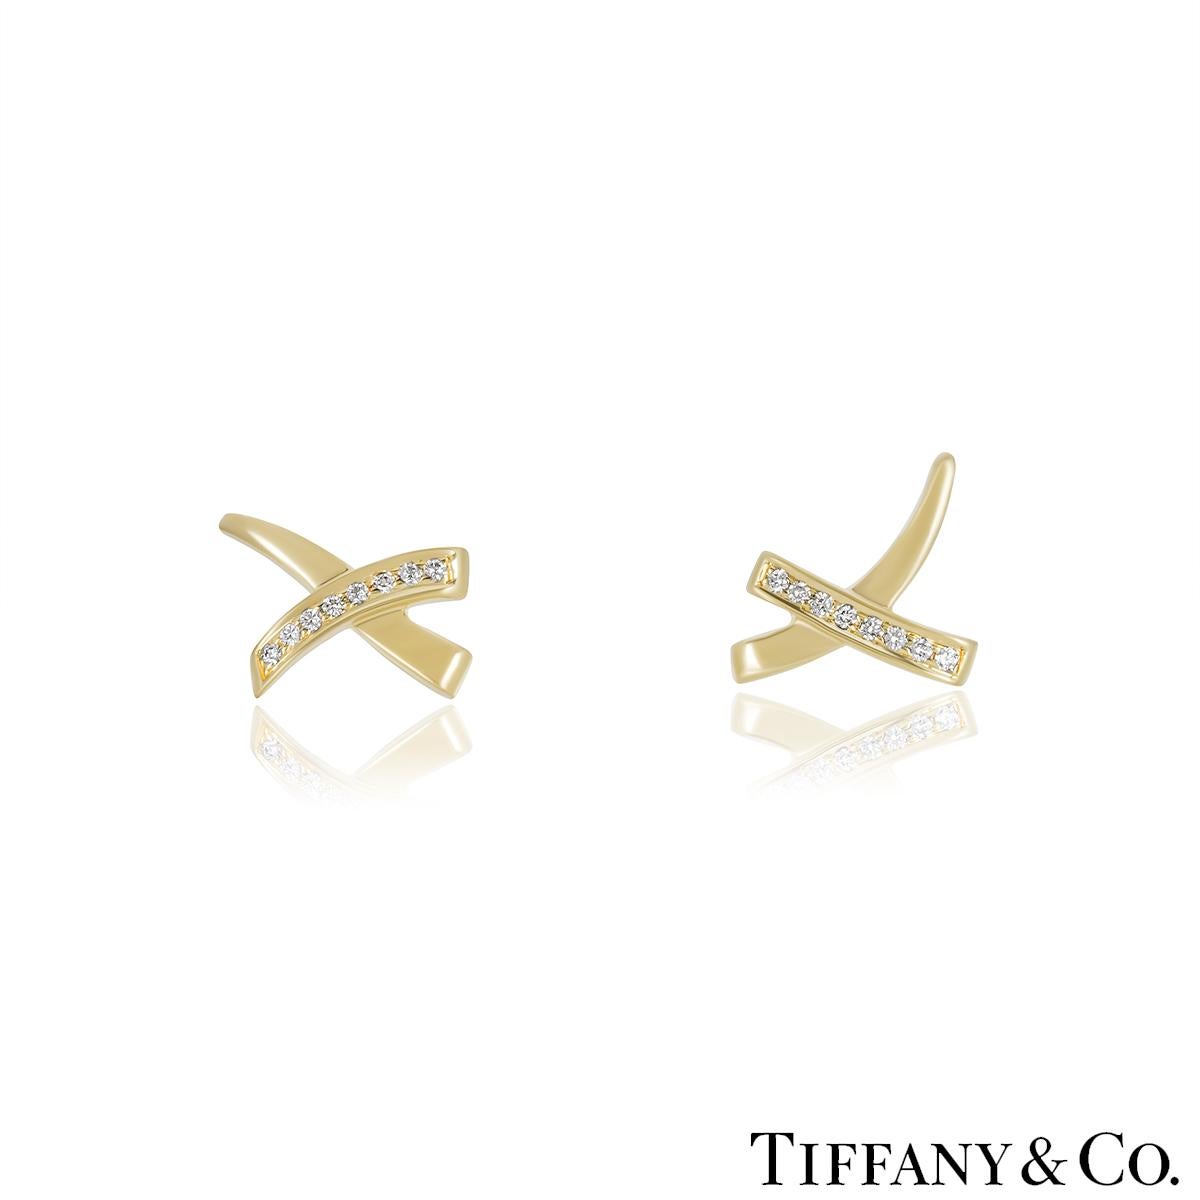 Eine Schmucksuite aus 18 Karat Gelbgold mit Diamanten von Tiffany & Co. aus der Paloma Picasso Graffiti Collection. Die Ohrringe haben ein X-Design und sind mit 16 runden Diamanten im Brillantschliff mit einem ungefähren Gesamtgewicht von 0,12 ct,